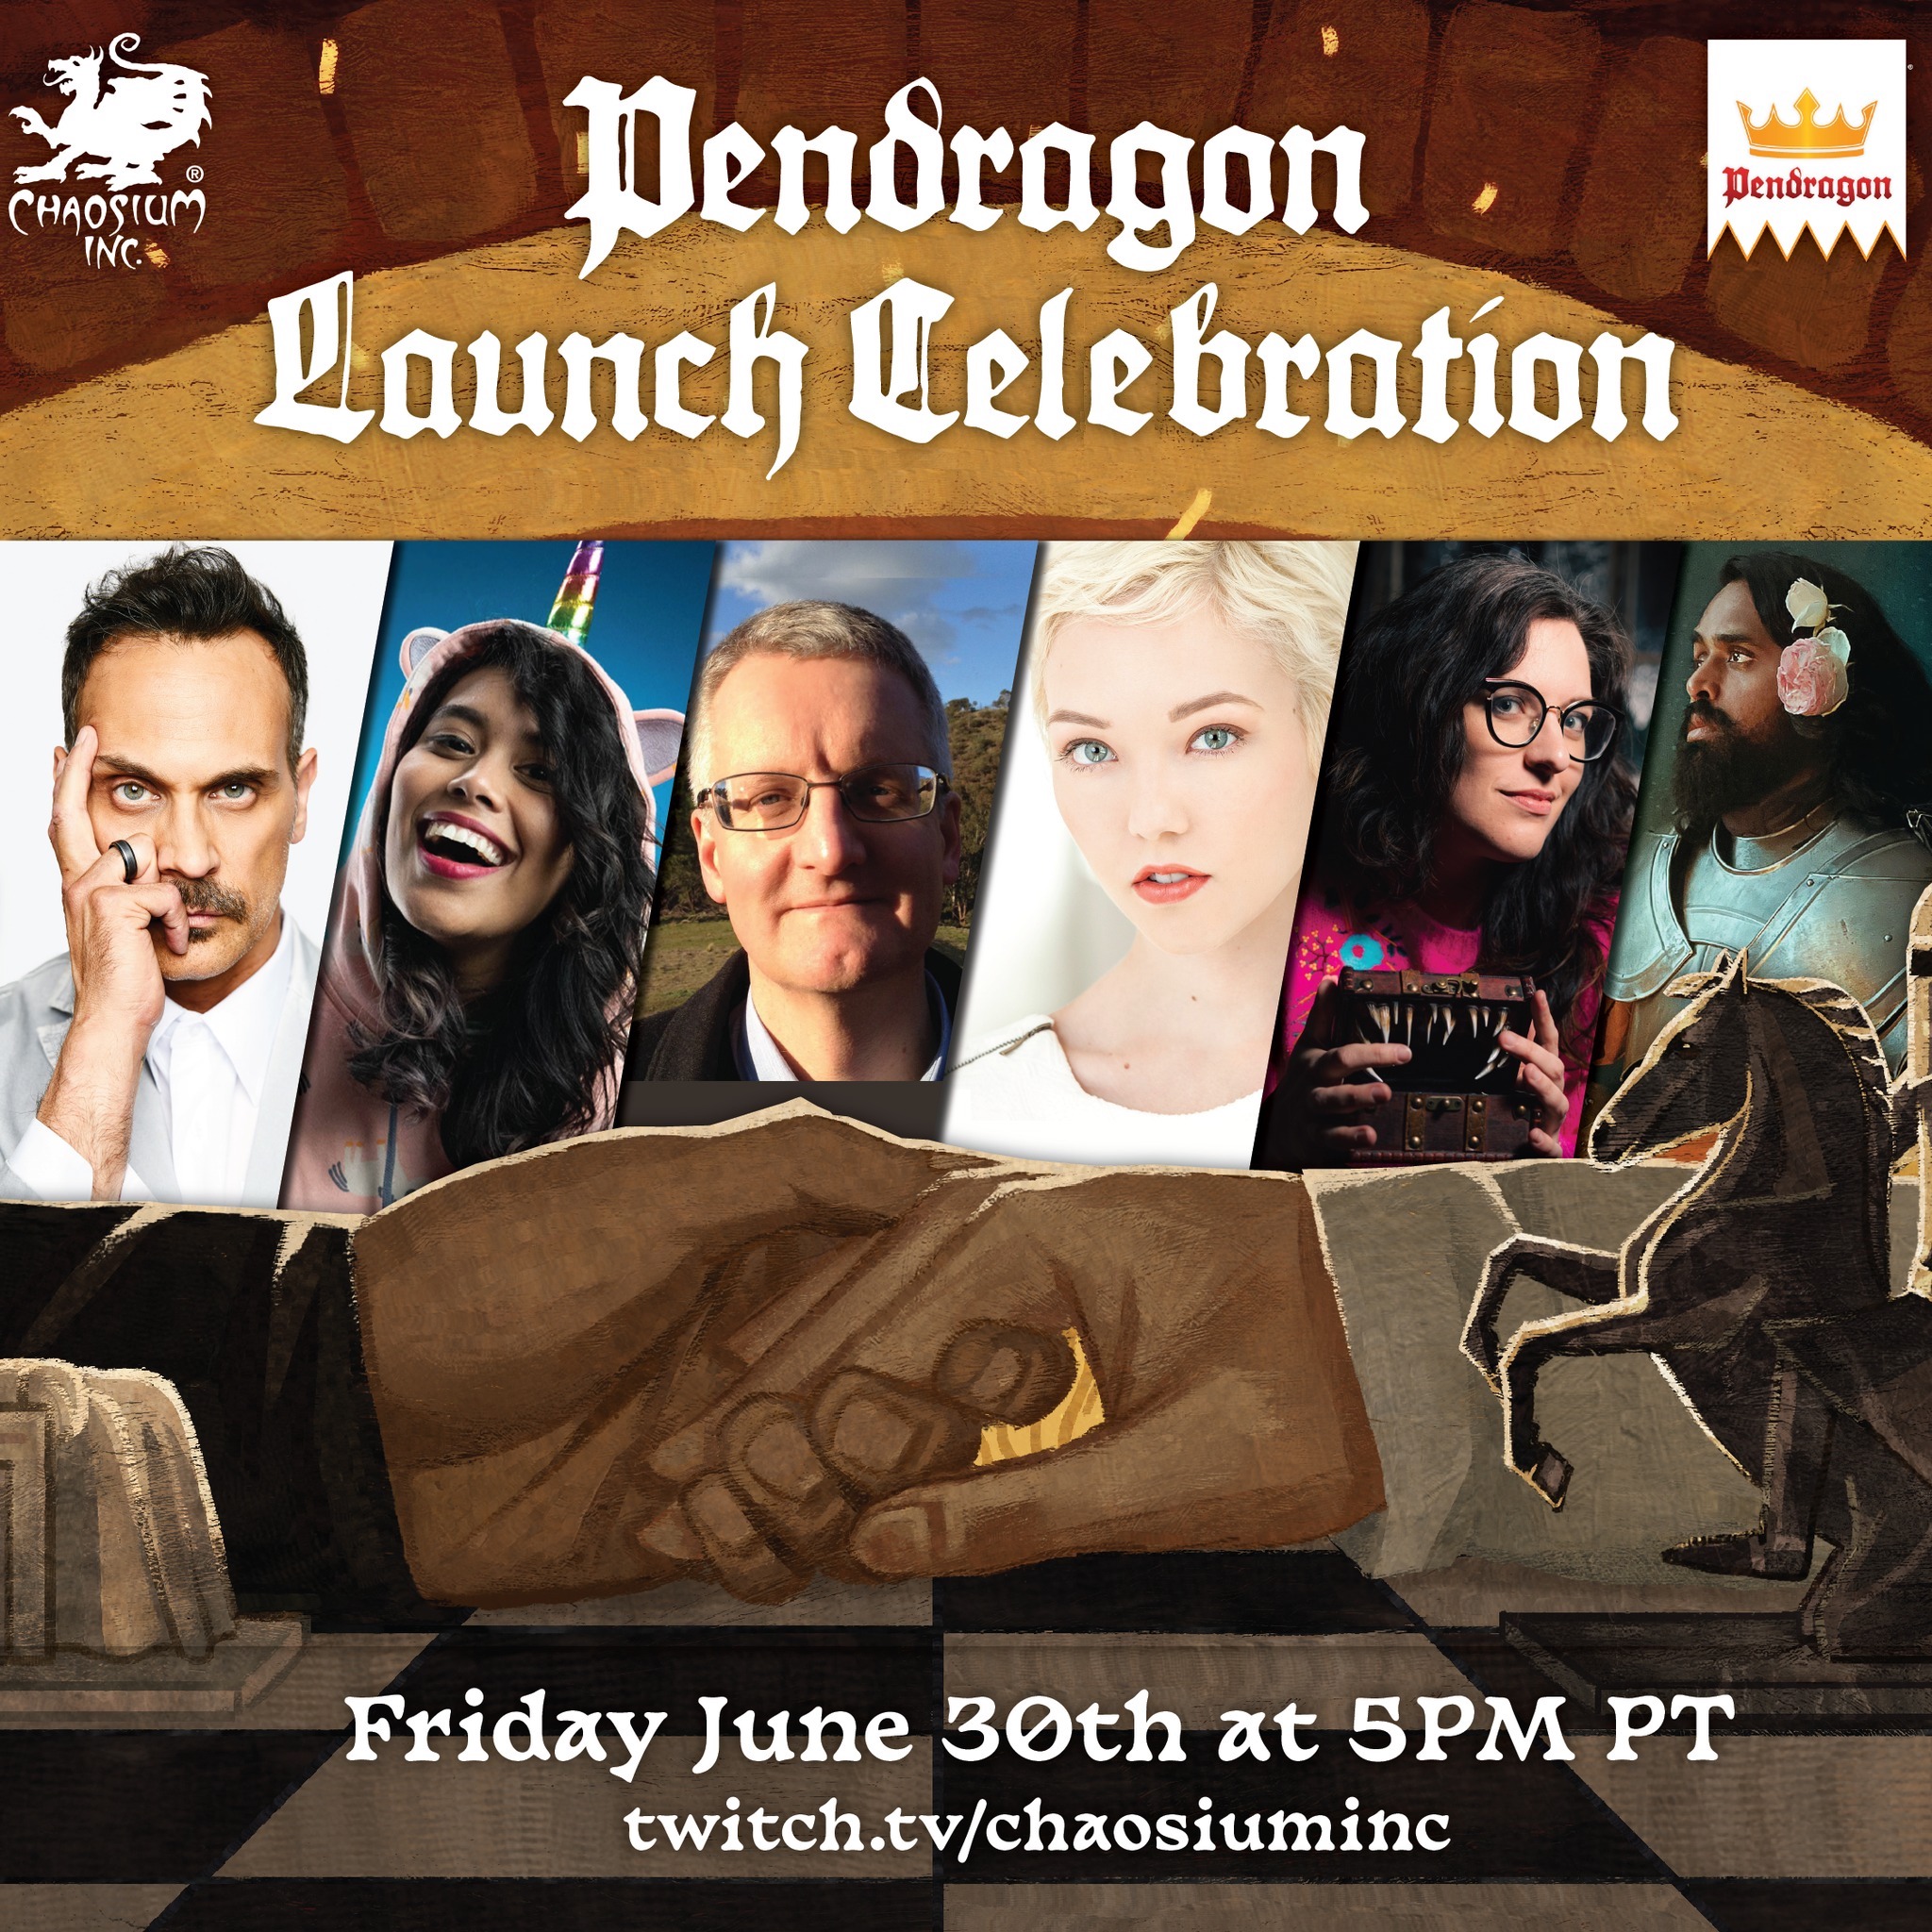 Pendragon Launch Celebration